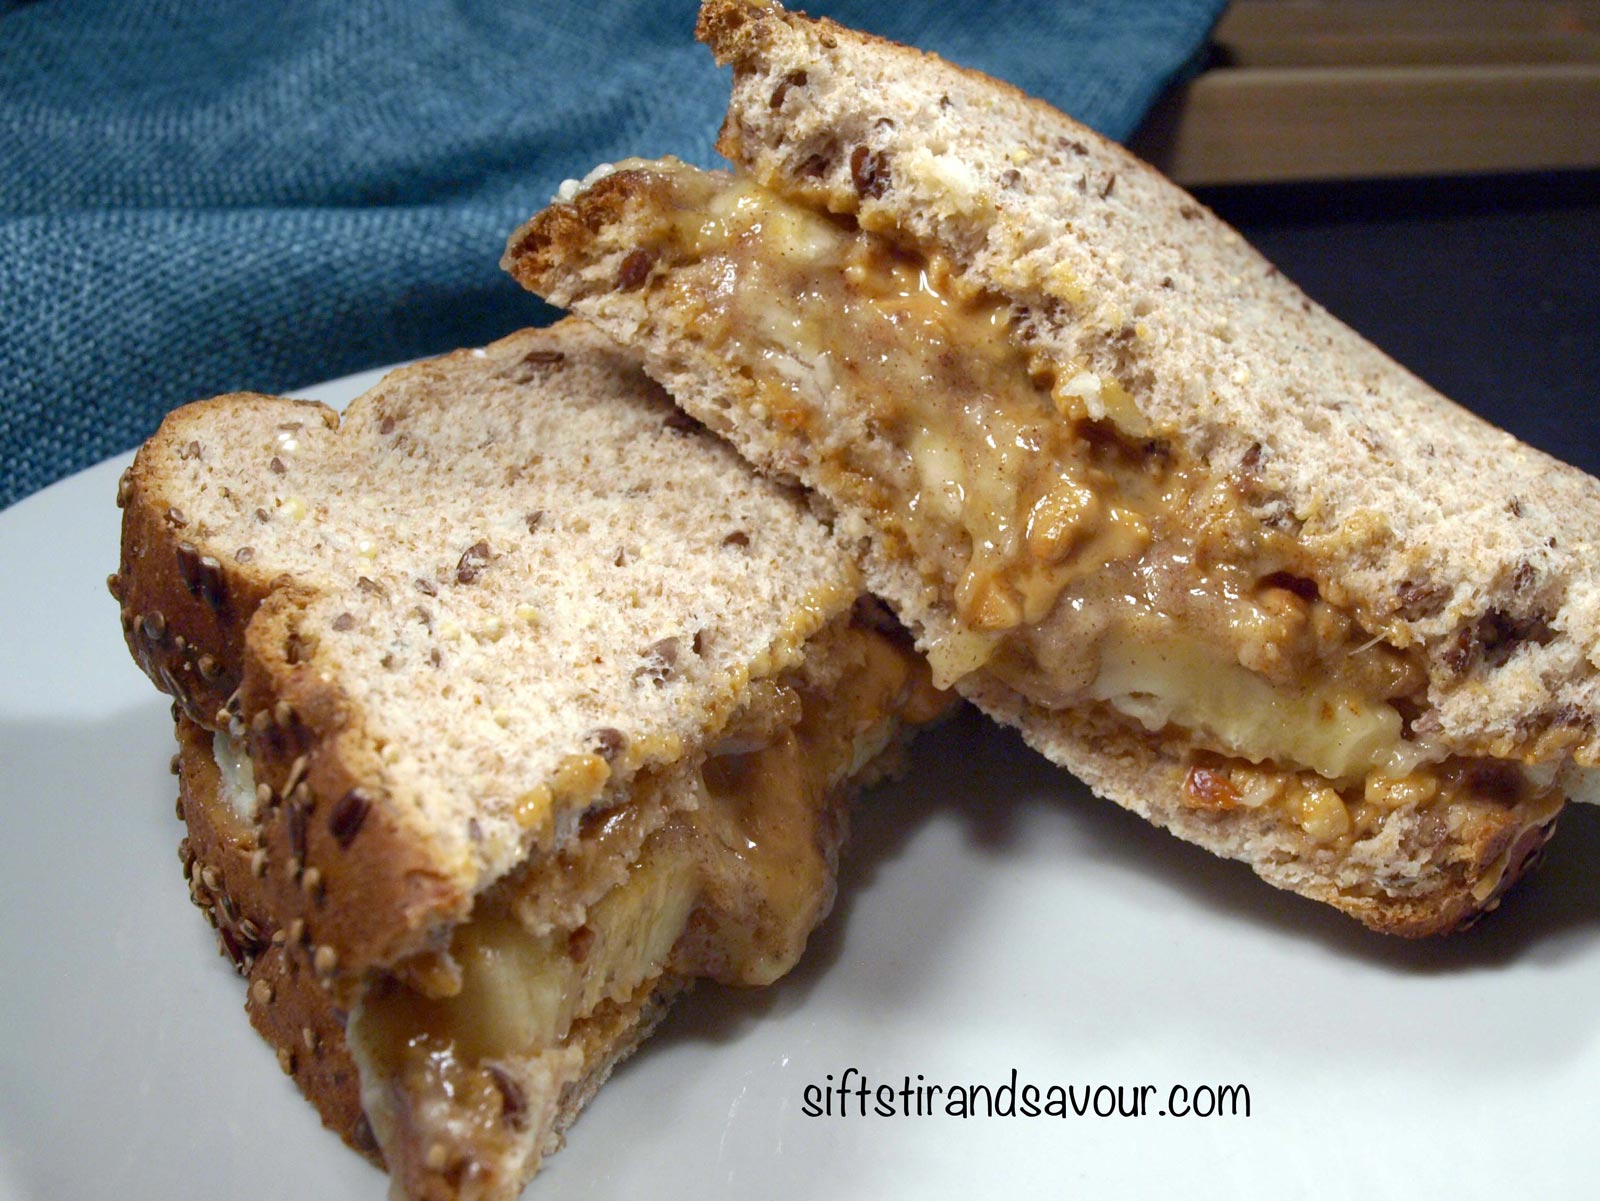 peanut-butter-banana-sandwich-Sift-Stir-and-Savour